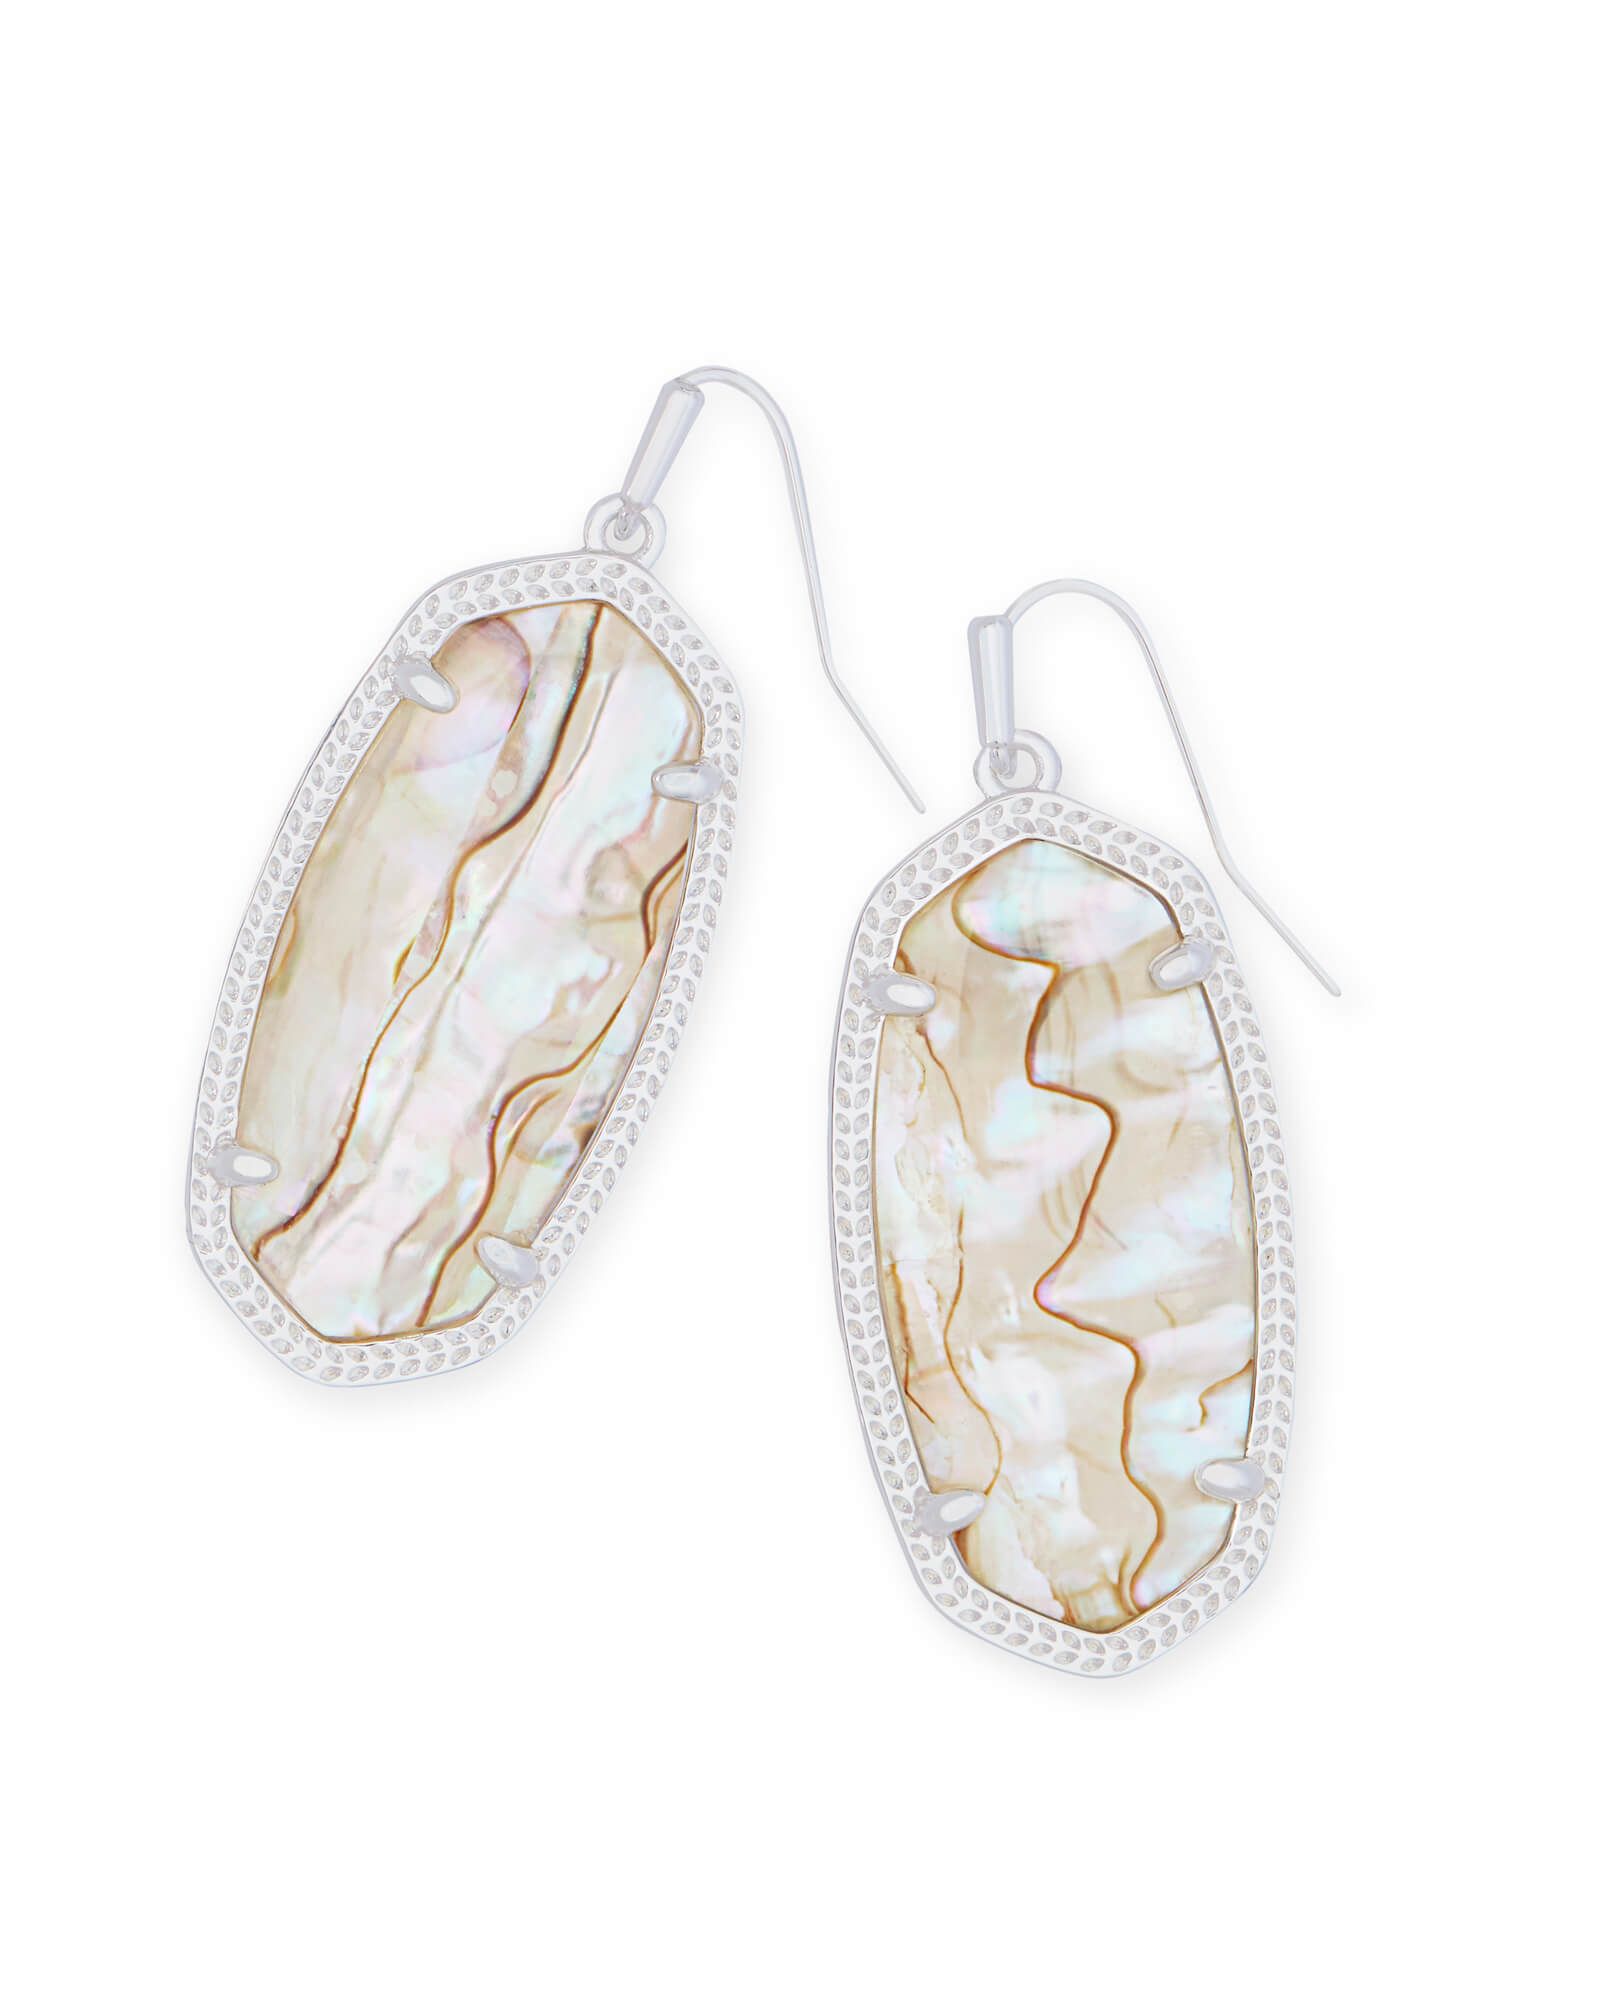 Elle Bright Silver Drop Earrings in White Abalone | Kendra Scott